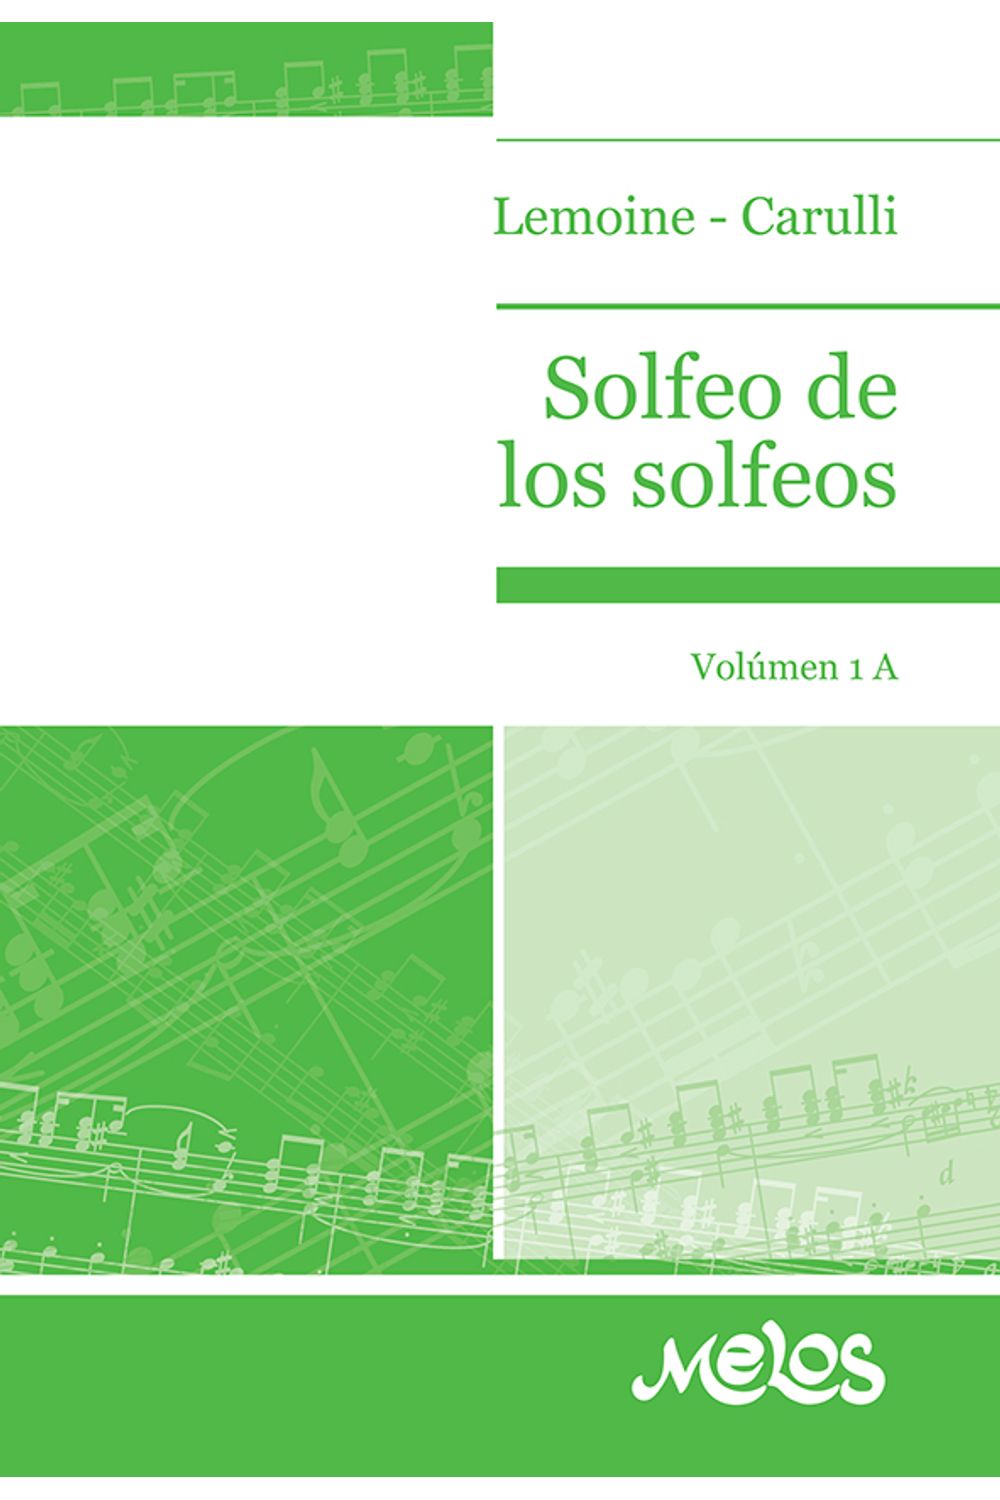 bm-ba133-solfeo-de-los-solfeos-1a-melos-ediciones-musicales-9789876110747